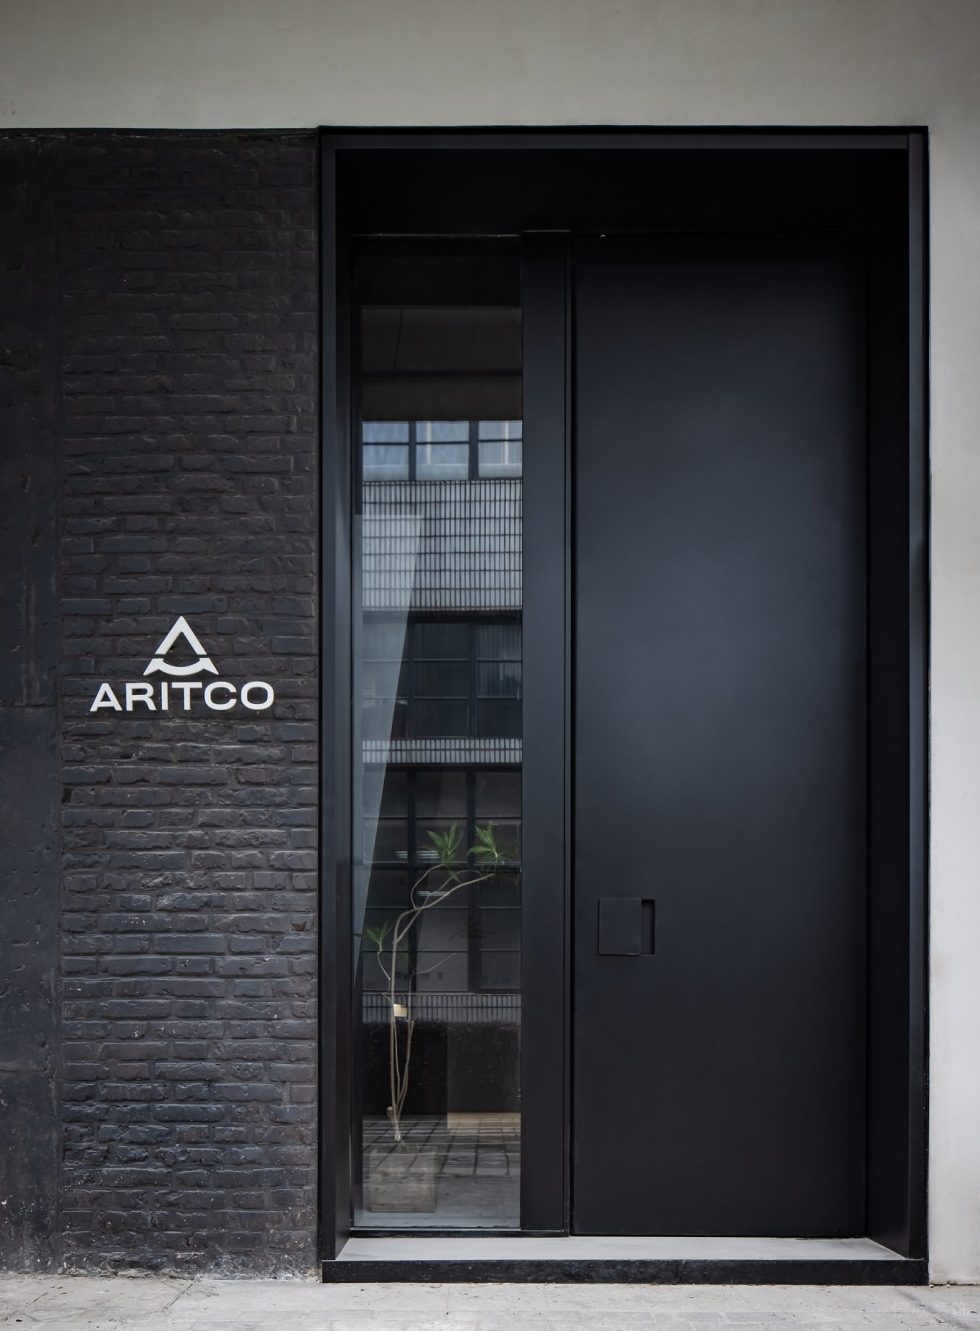 Aritco电梯展厅装修设计 外立面灰砖玻璃造型墙面